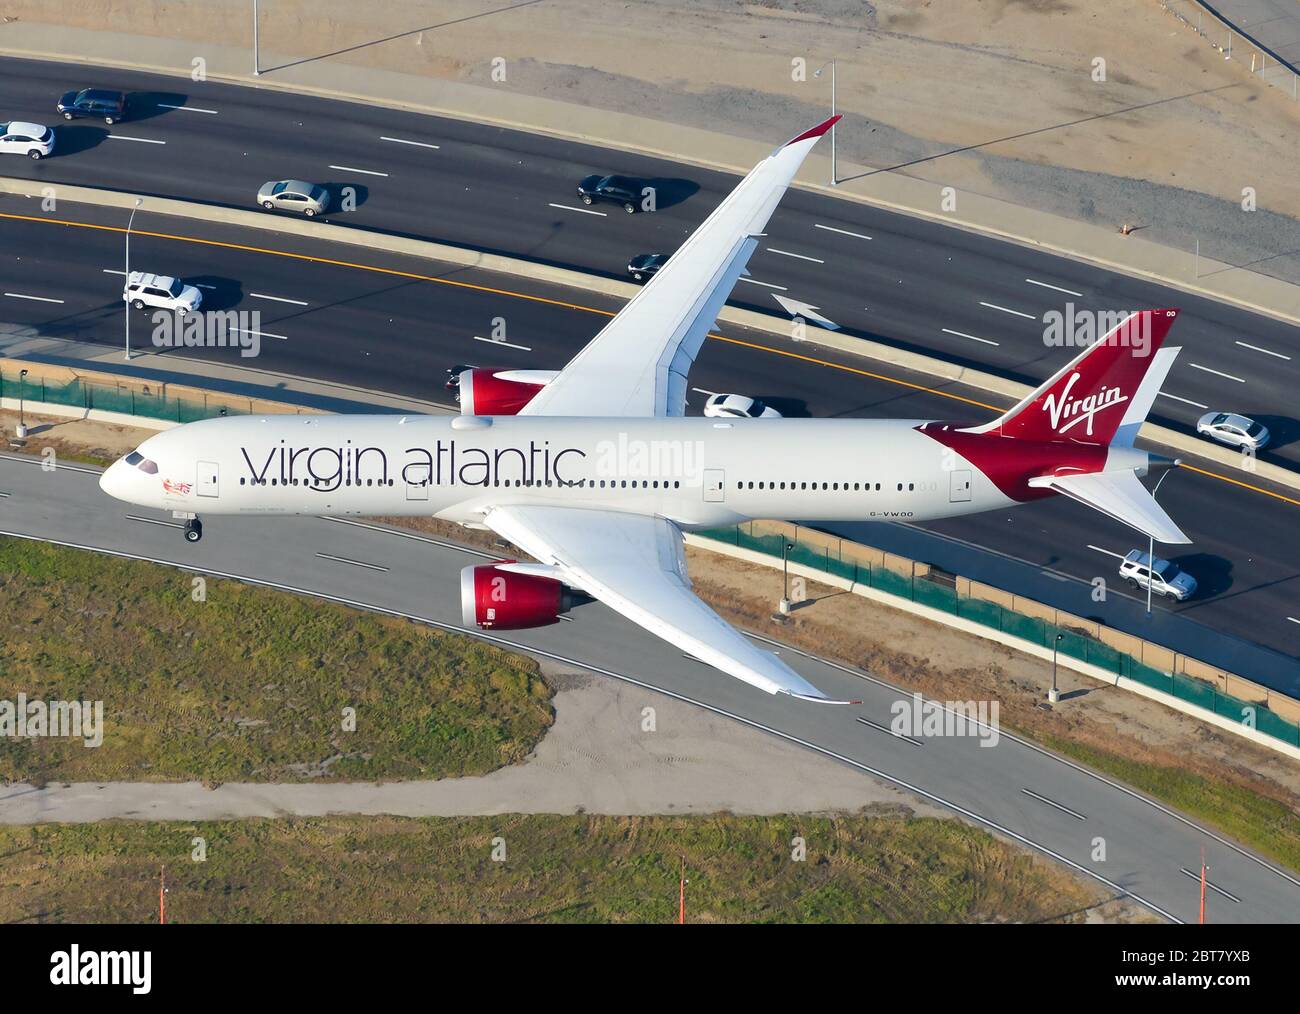 Avion Virgin Atlantic Boeing 787 Dreamliner vue d'en haut. Avion B787 (787-9) atterrissage à l'aéroport de Los Angeles en provenance de l'aéroport de Gatwick. Banque D'Images